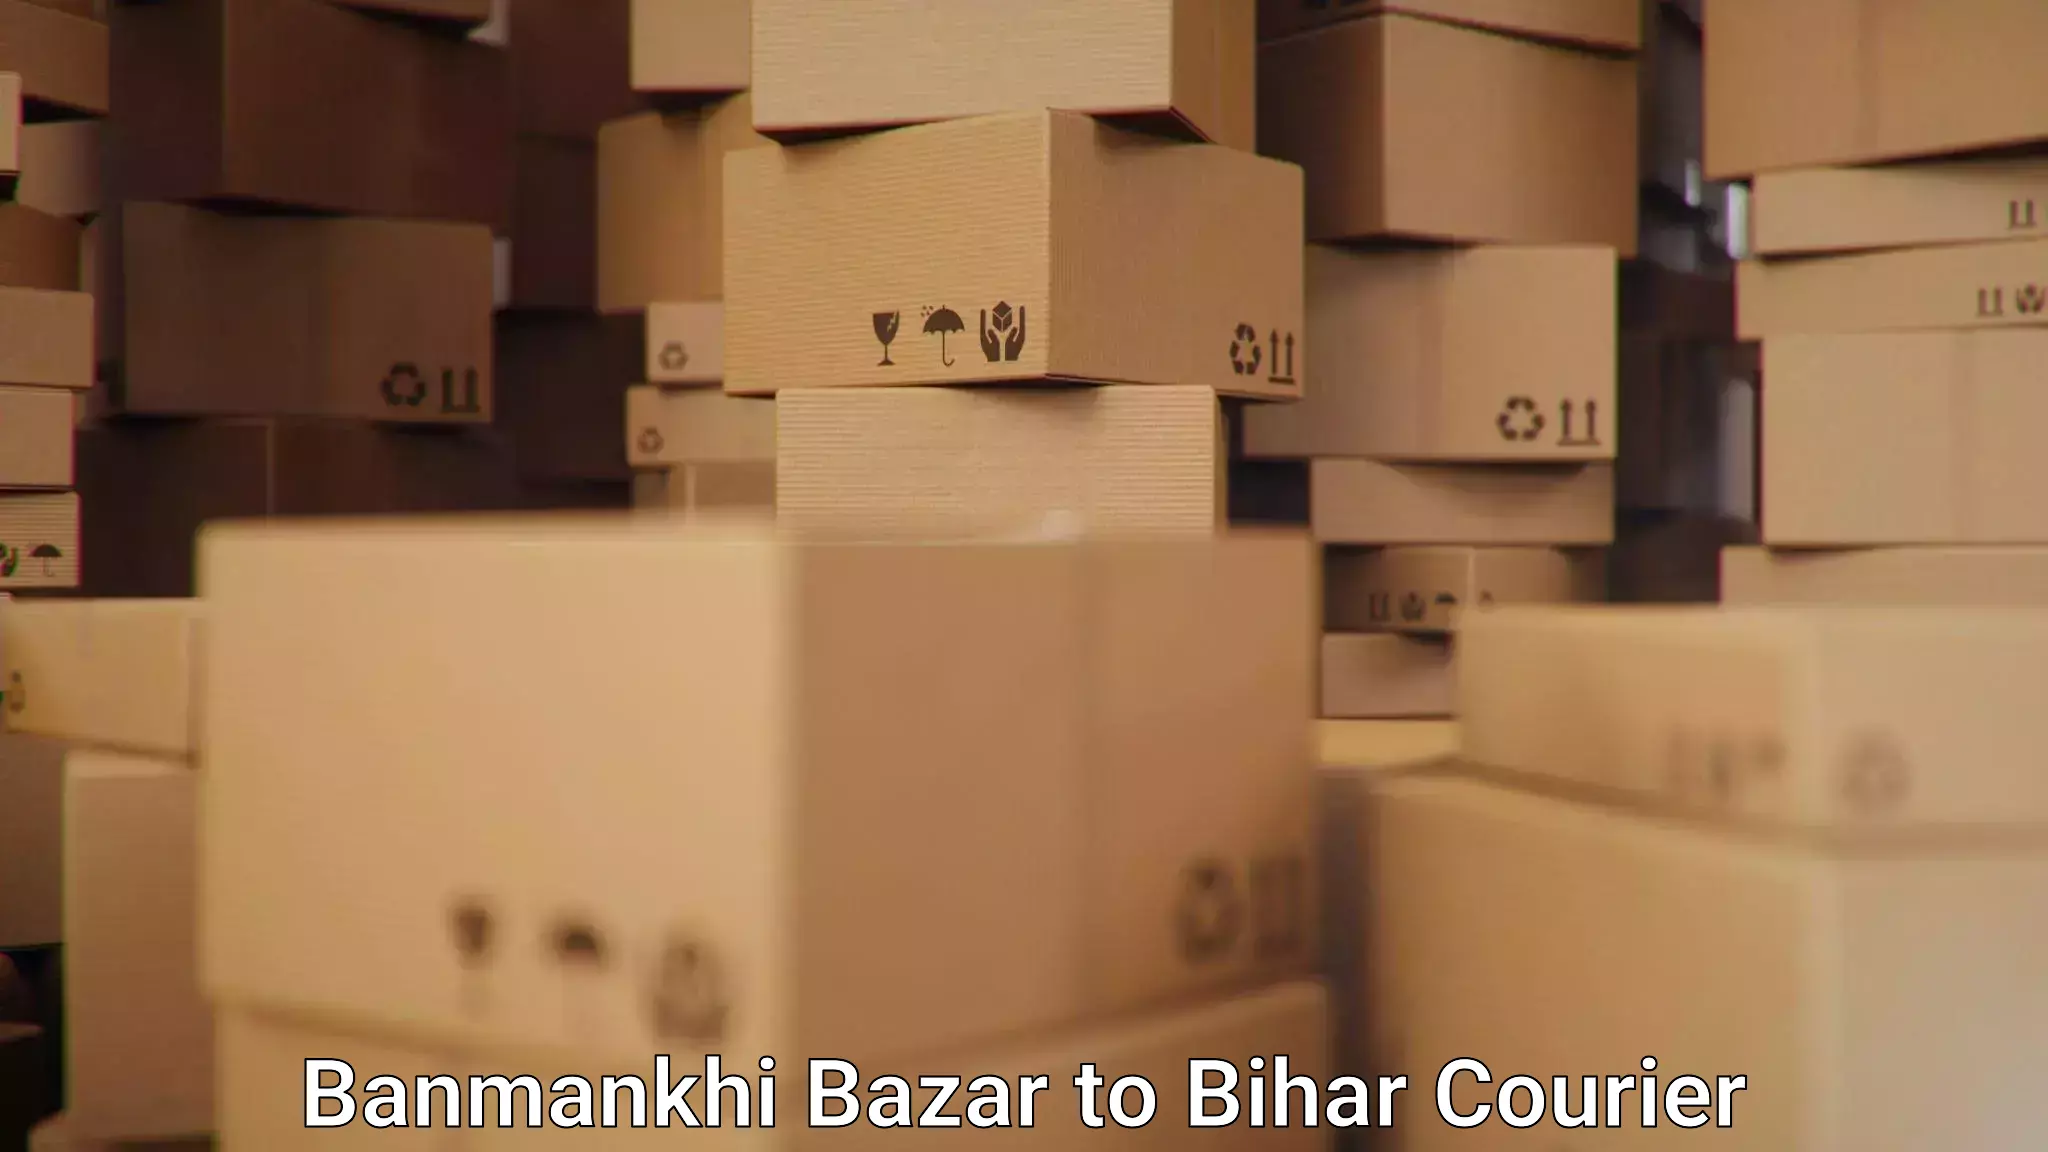 Global logistics network Banmankhi Bazar to Jhajha